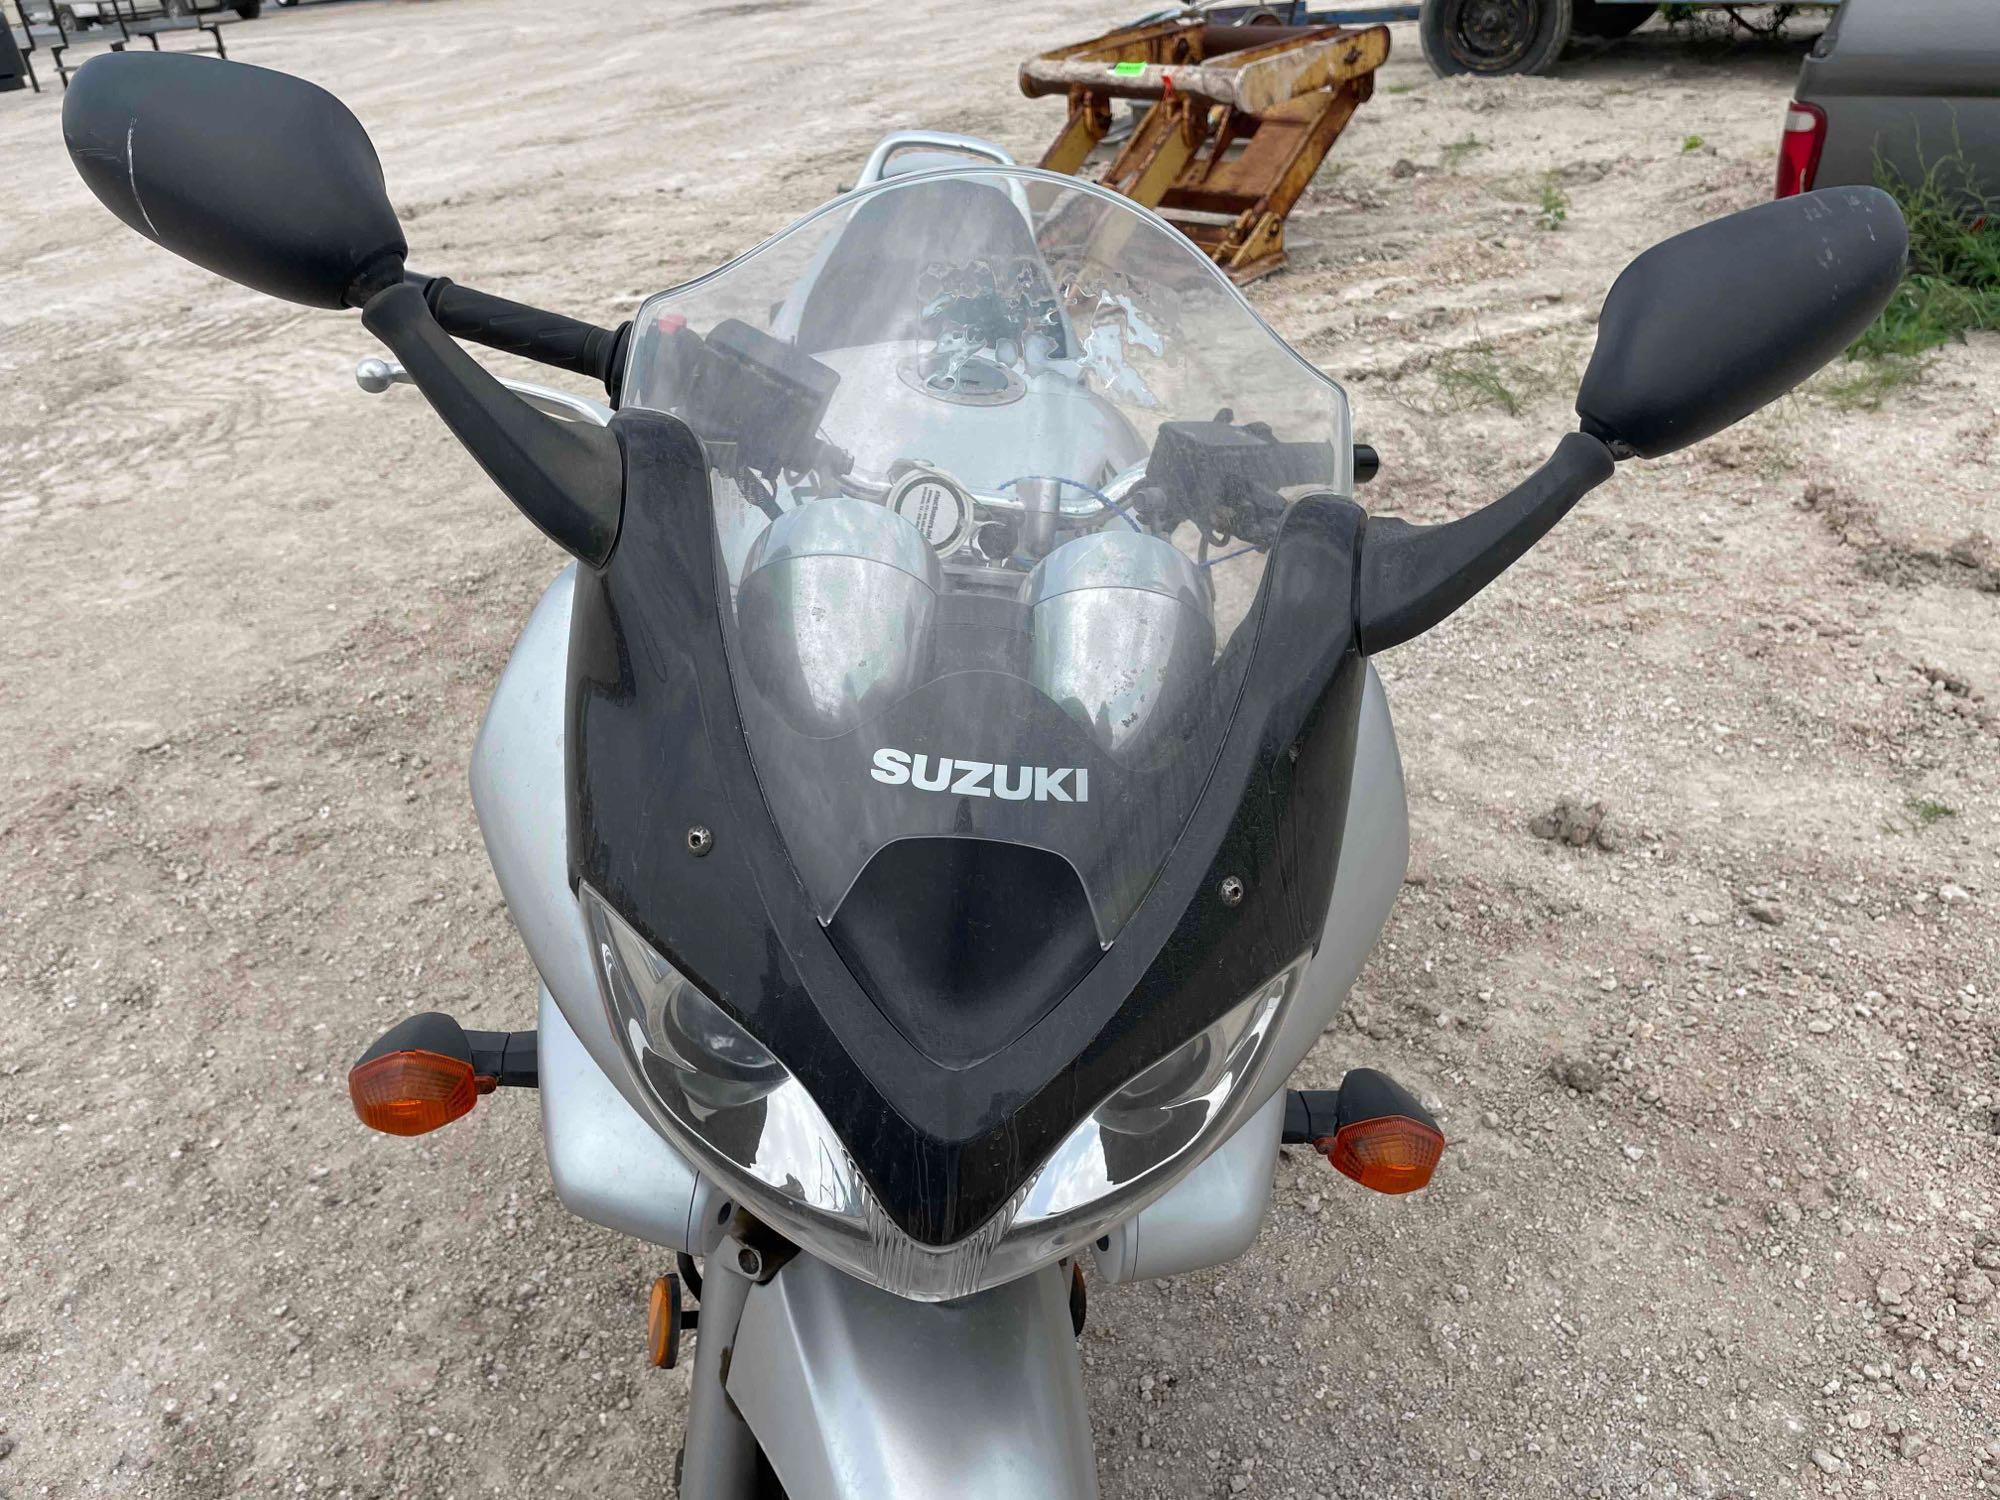 2001 Suzuki Bandit 1200S Motorcycle.